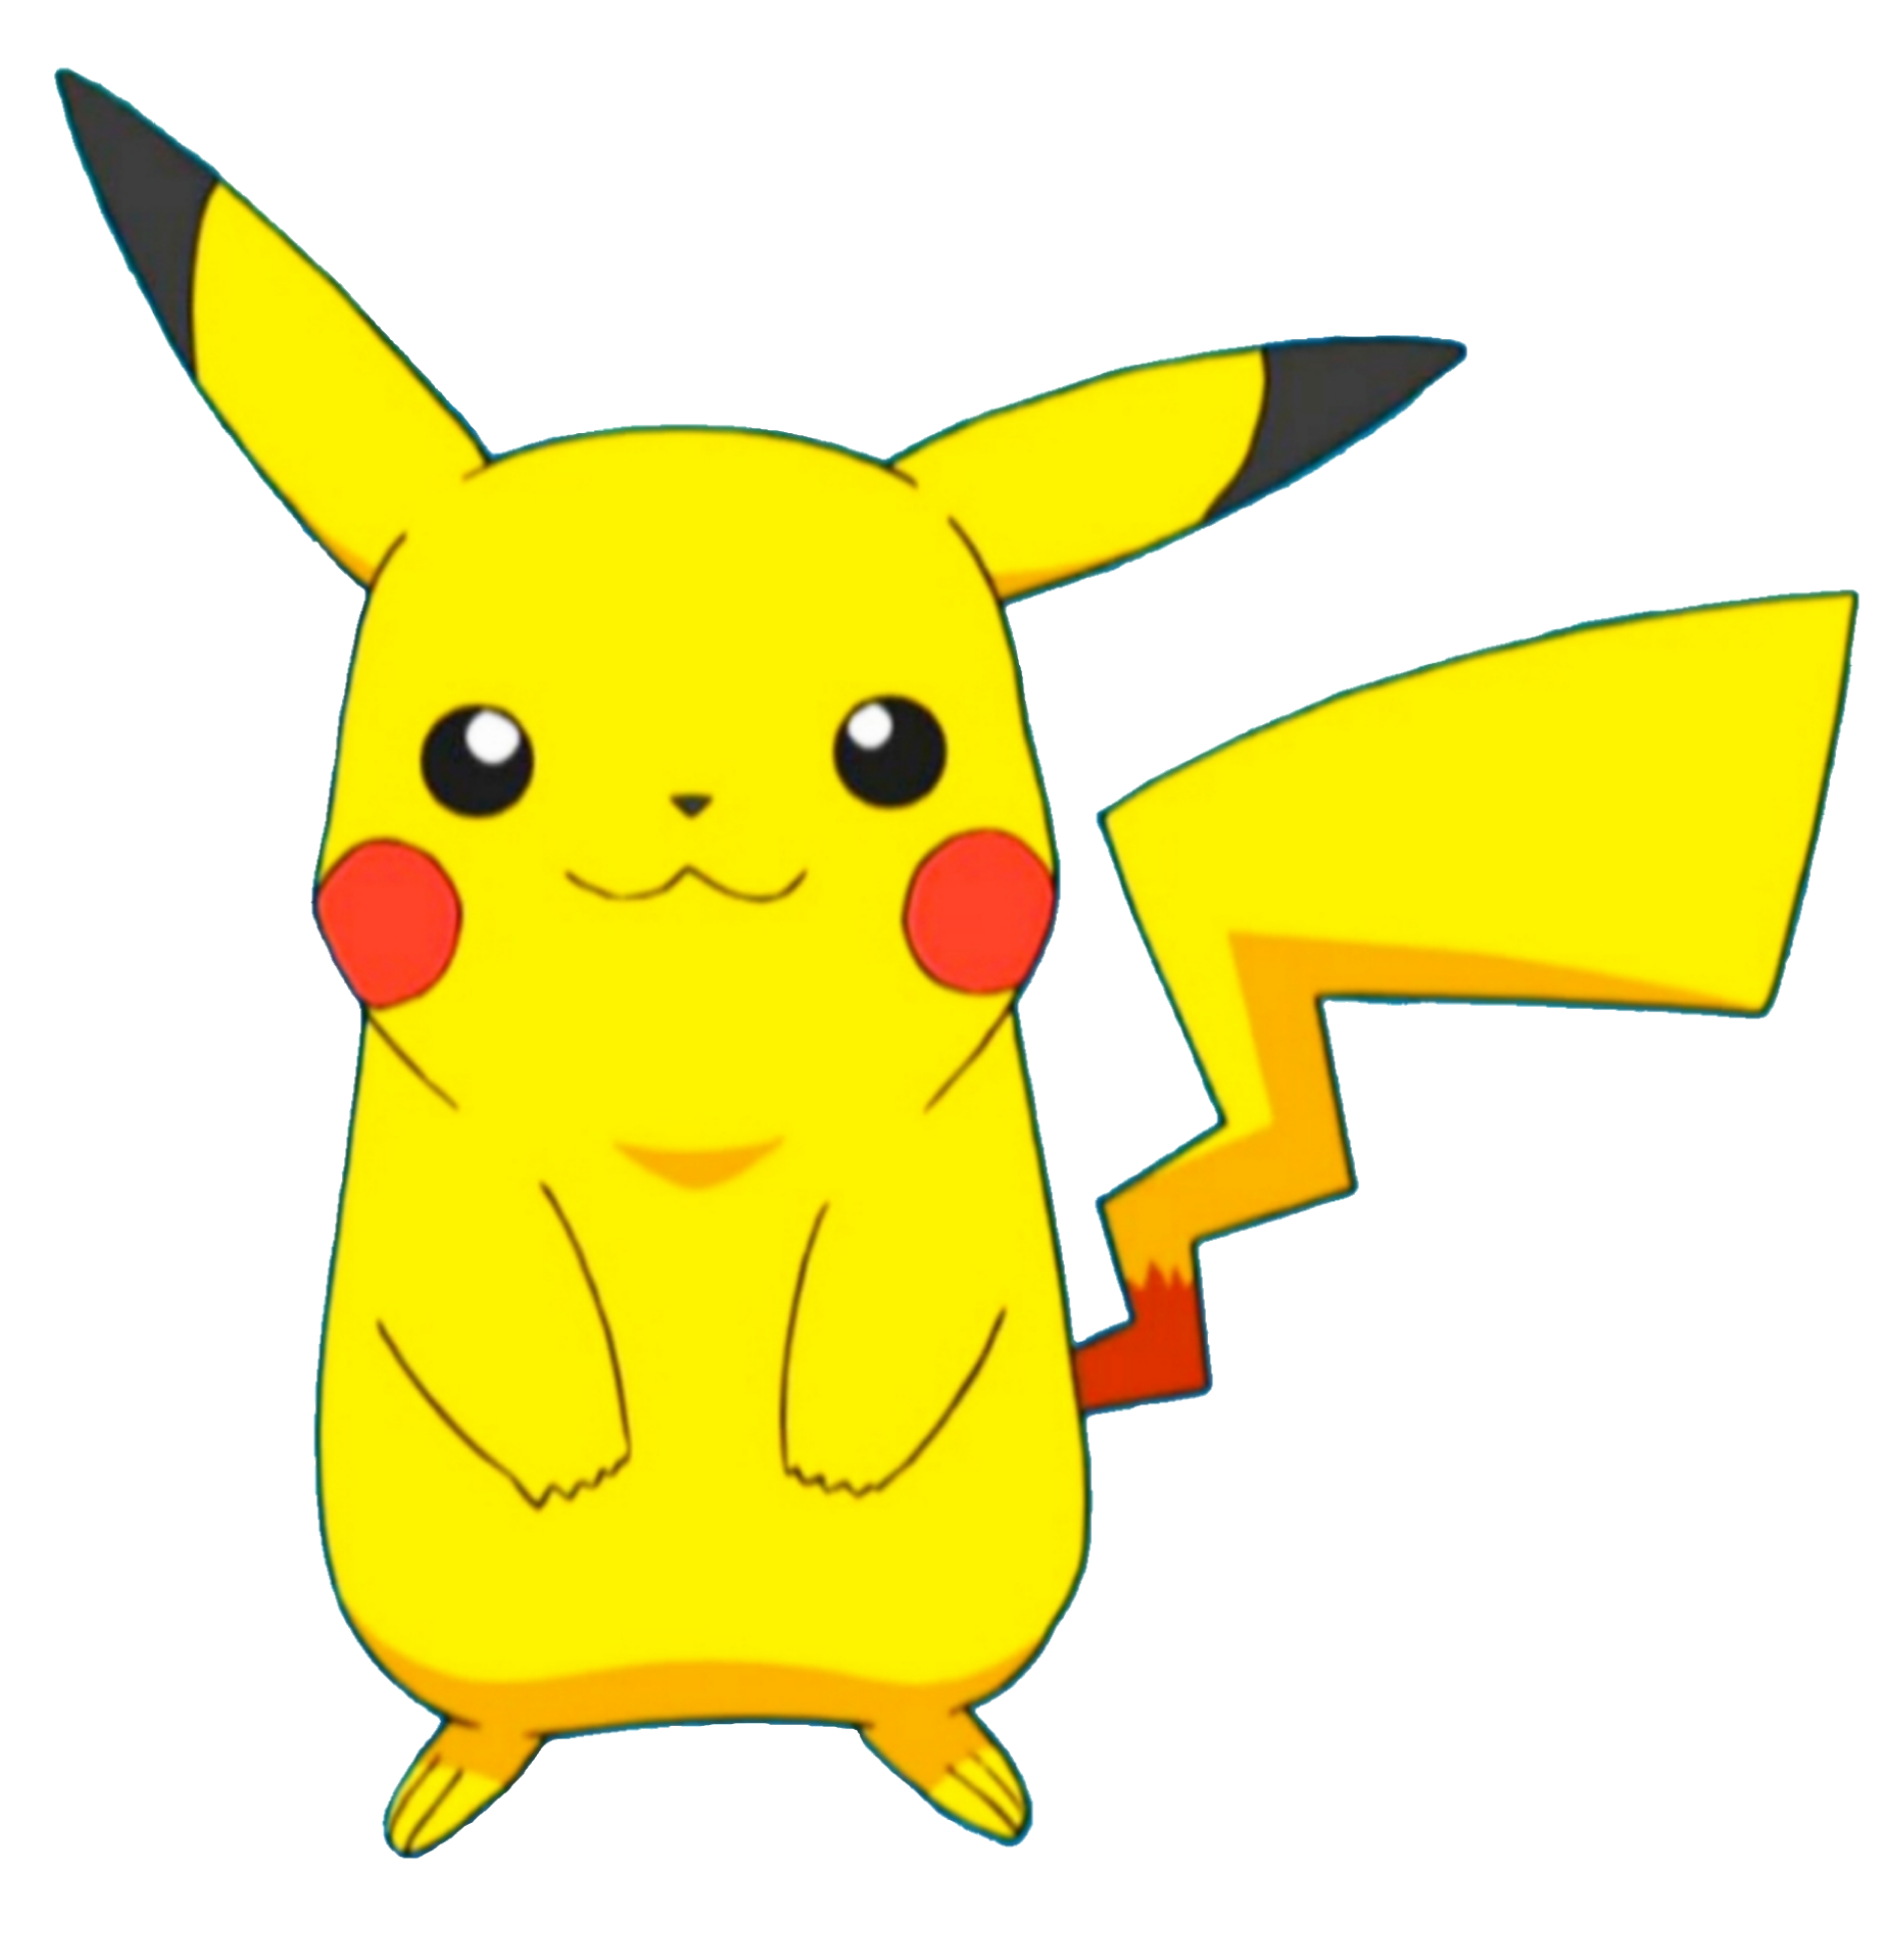 Pikachu, Pokémon Wiki, Fandom